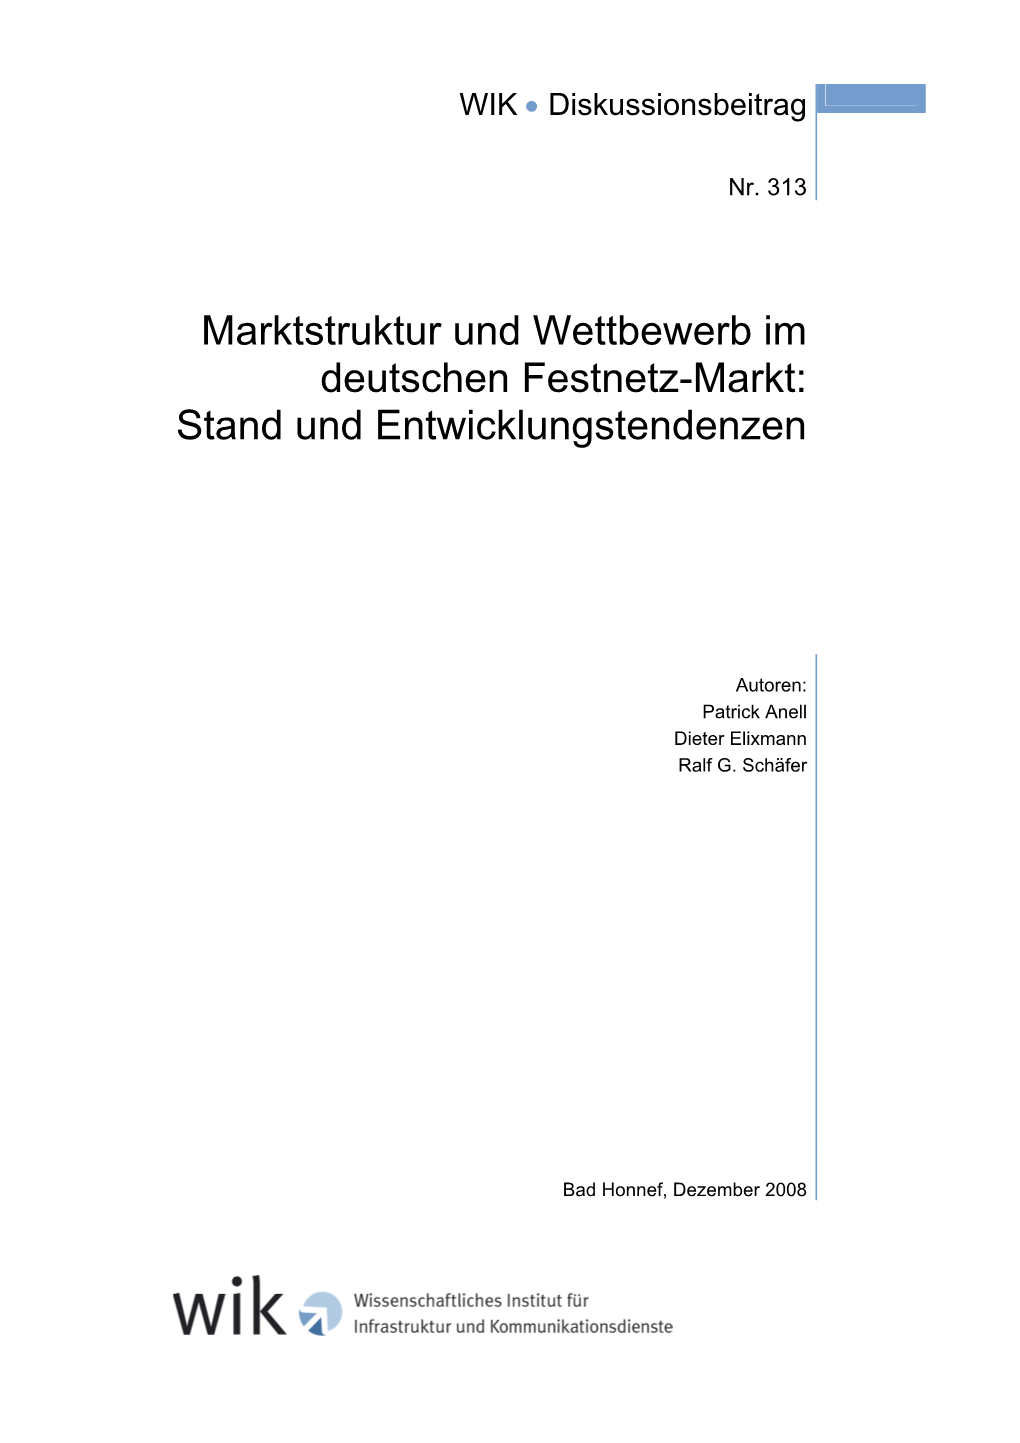 Marktstruktur Und Wettbewerb Im Deutschen Festnetz-Markt: Stand Und Entwicklungstendenzen